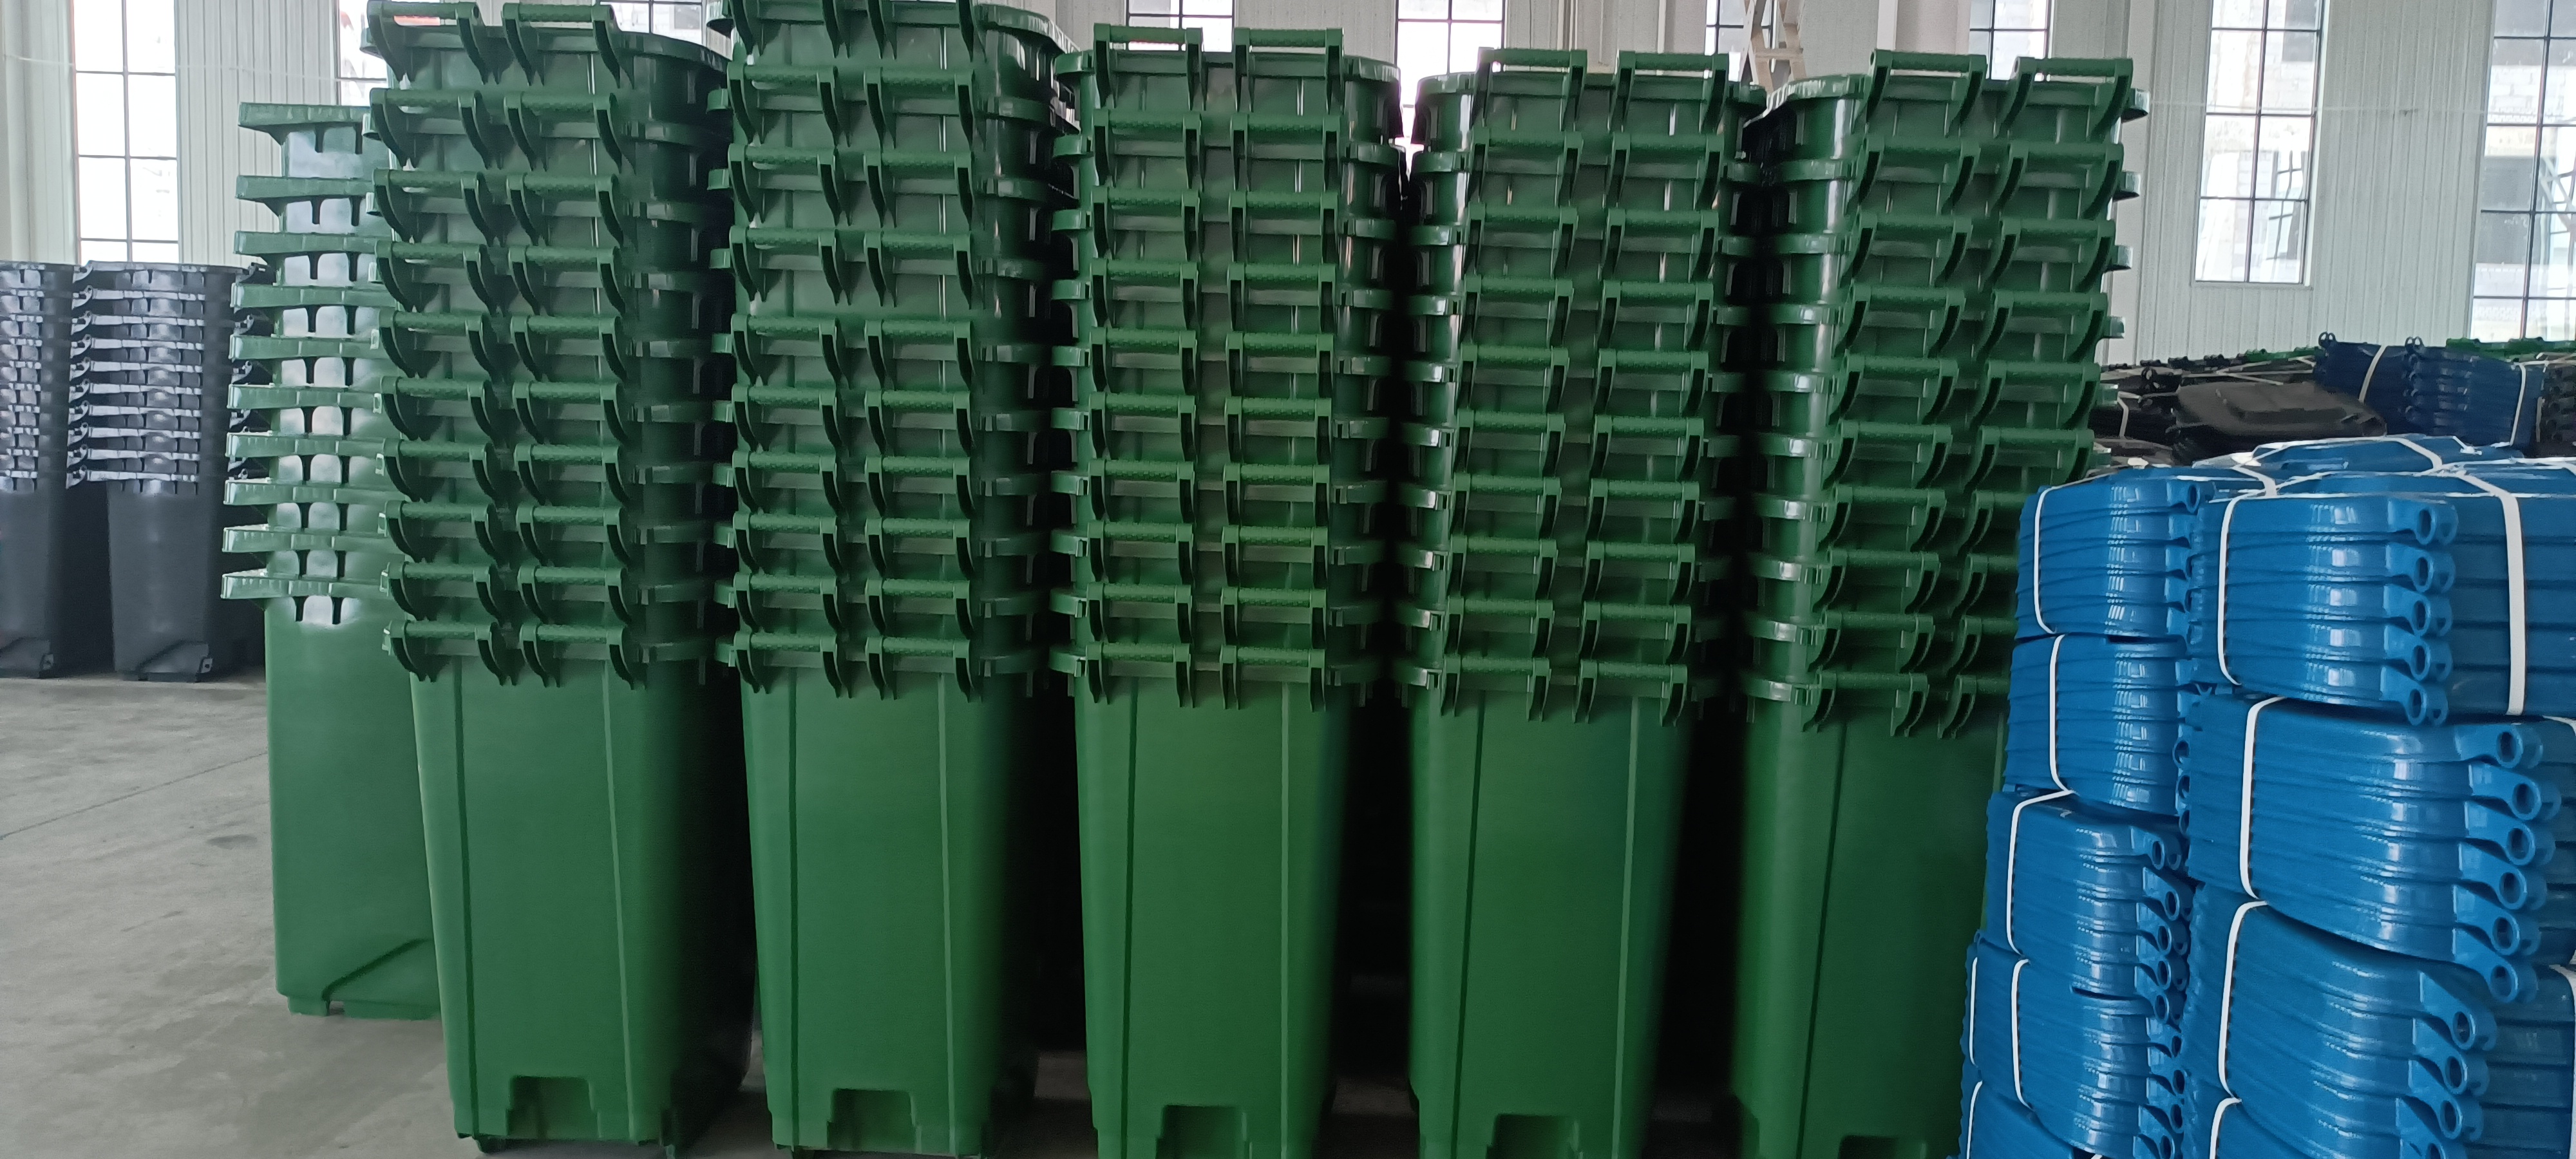 北京环卫垃圾桶垃圾分类亭配套垃圾桶  适用于商场超市